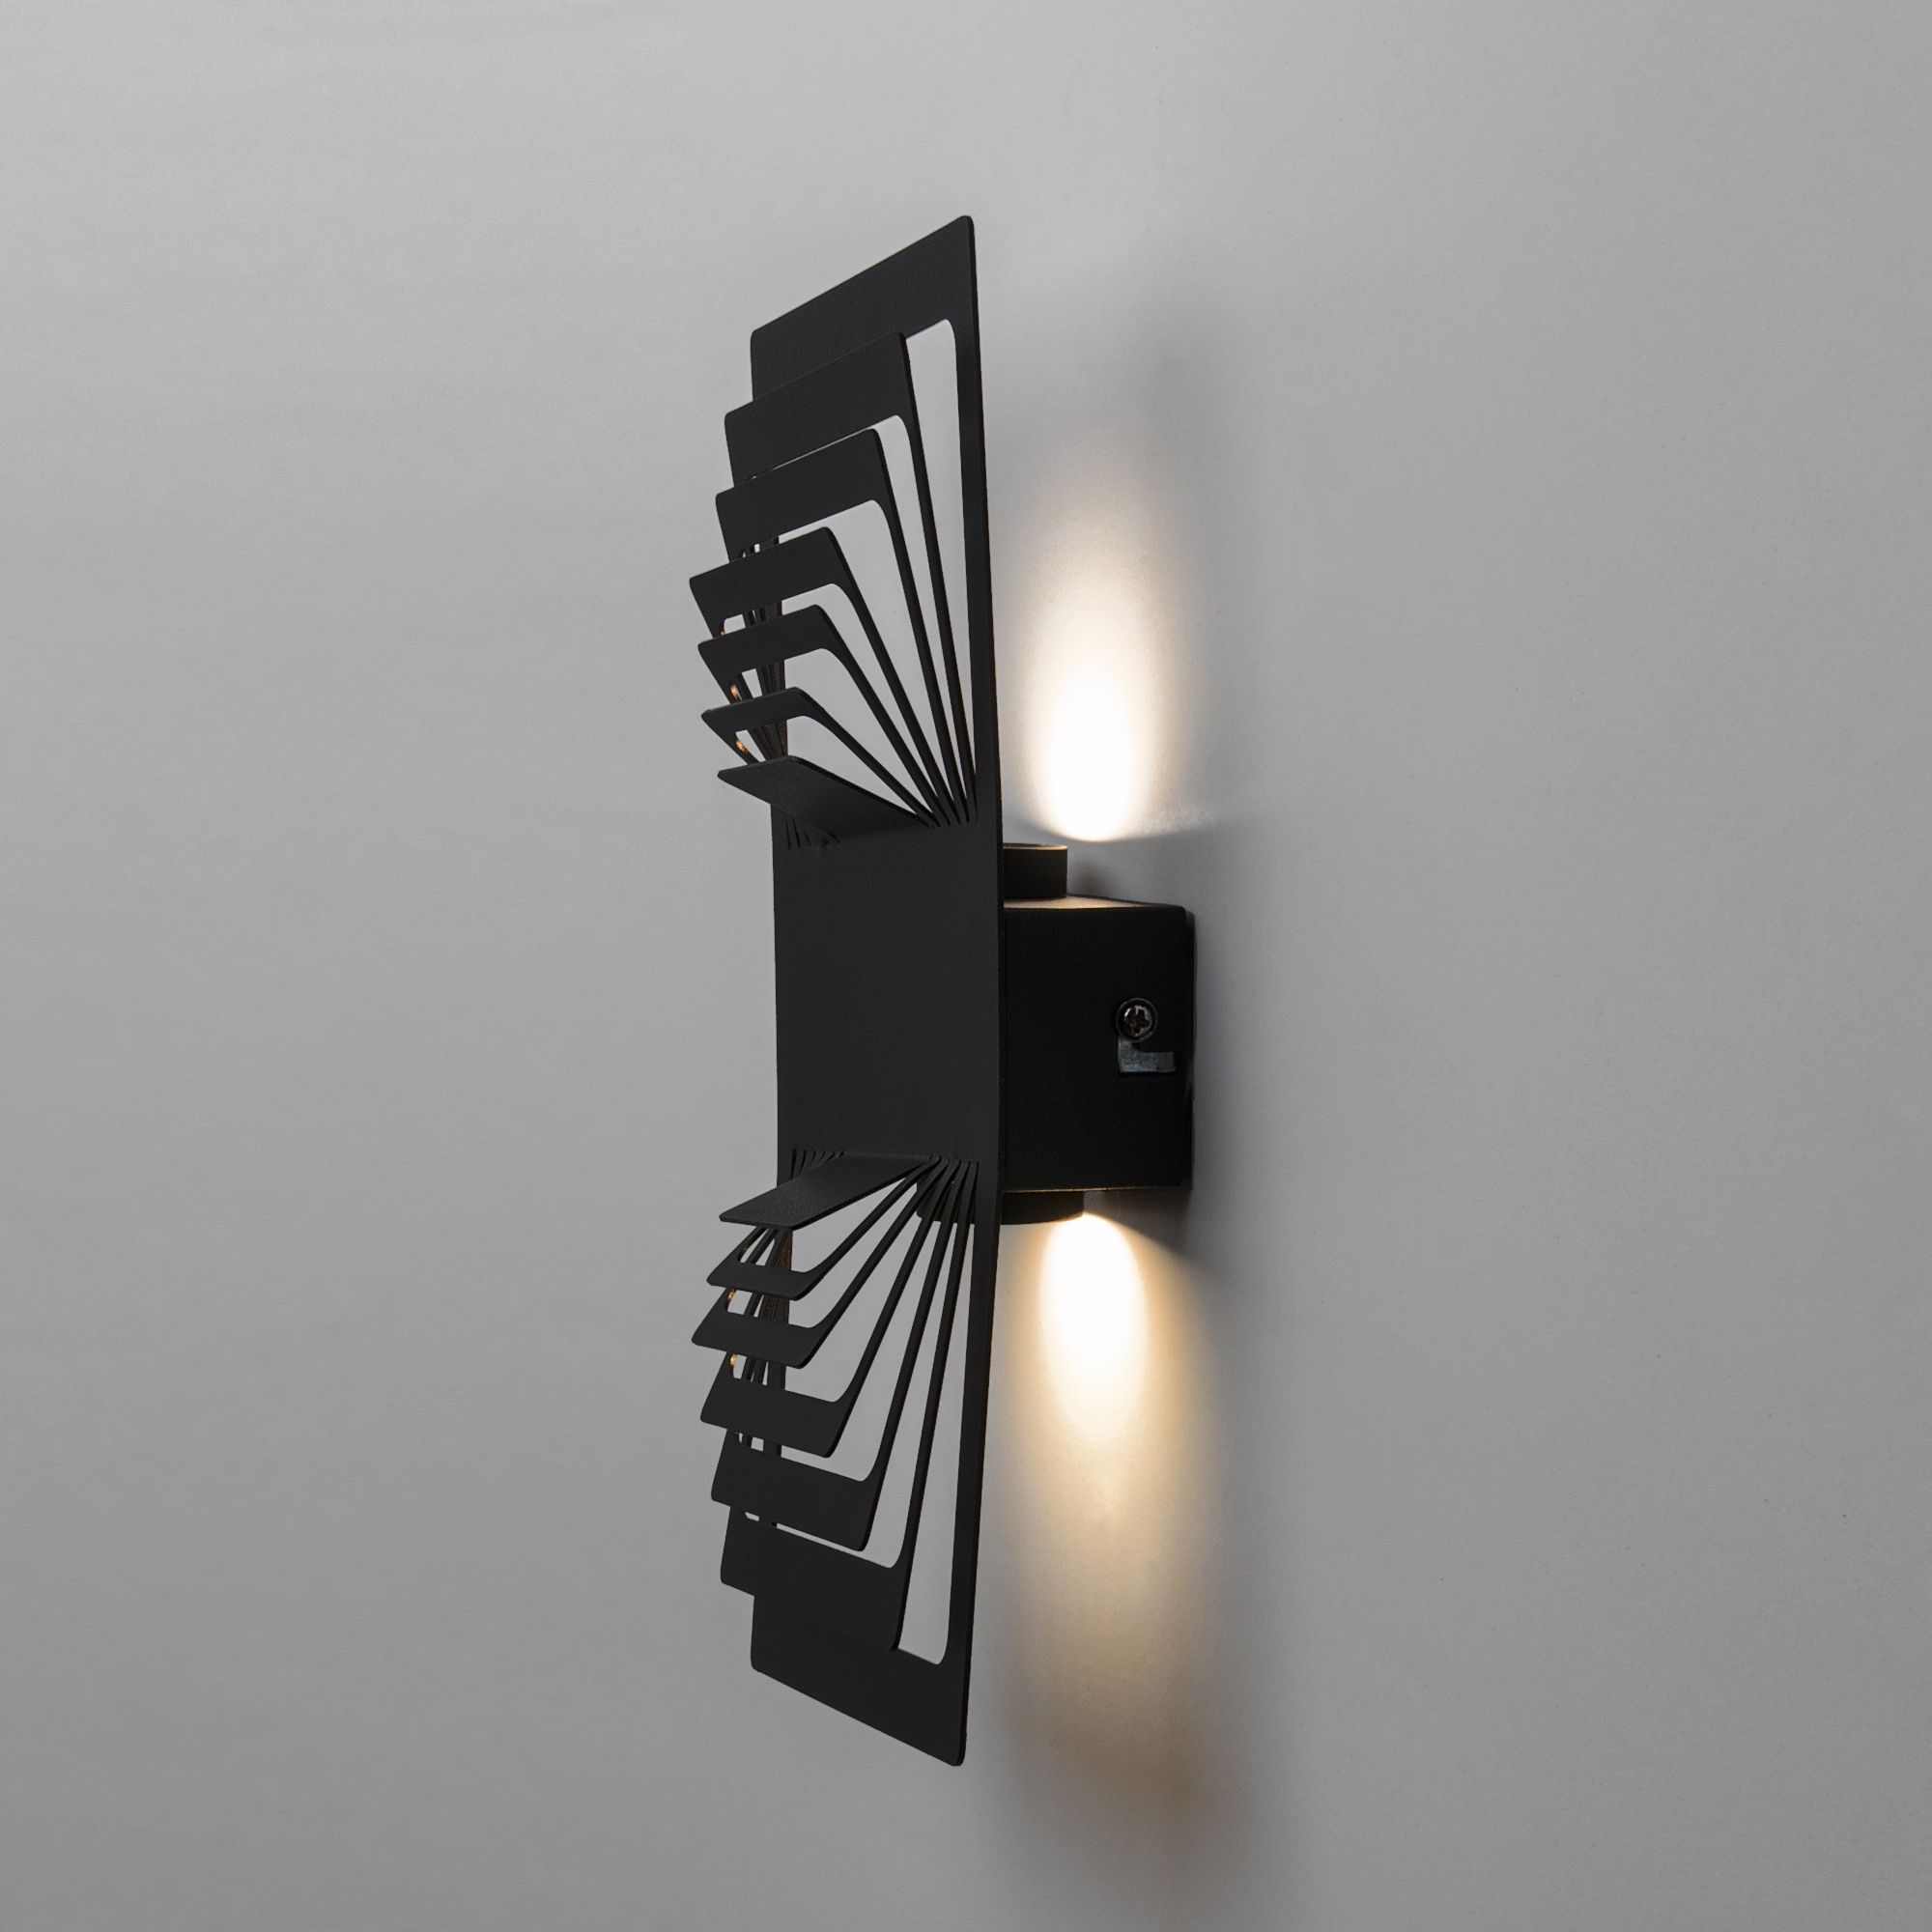 Настенный светодиодный светильник Onda LED MRL LED 1025 чёрный